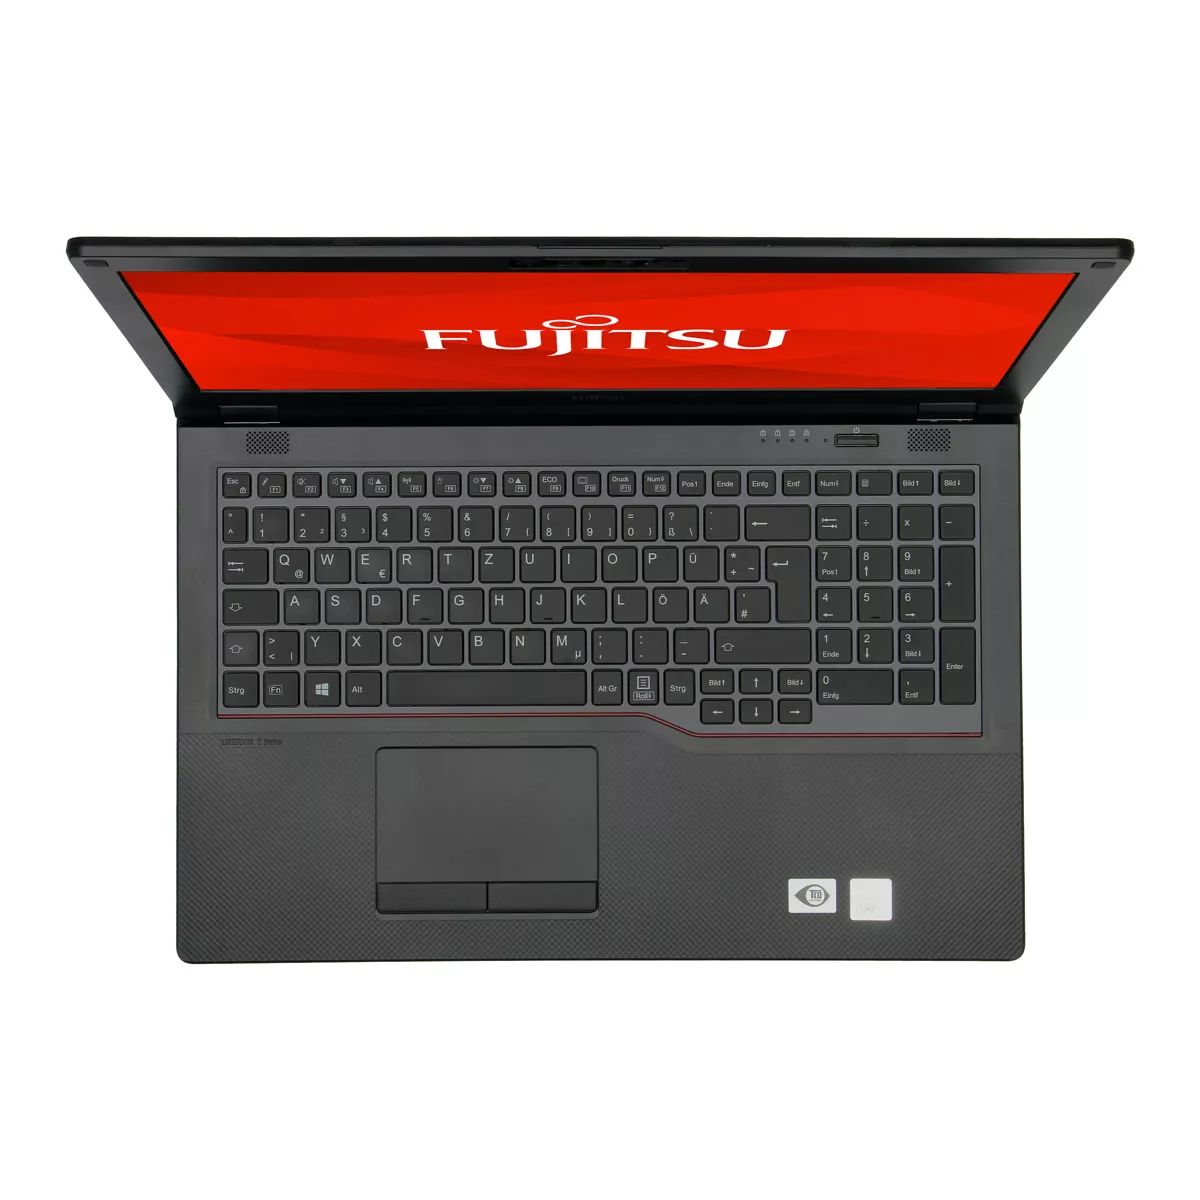 Fujitsu Lifebook E558 Core i3 7020U 8 GB 500 M.2 SSD A